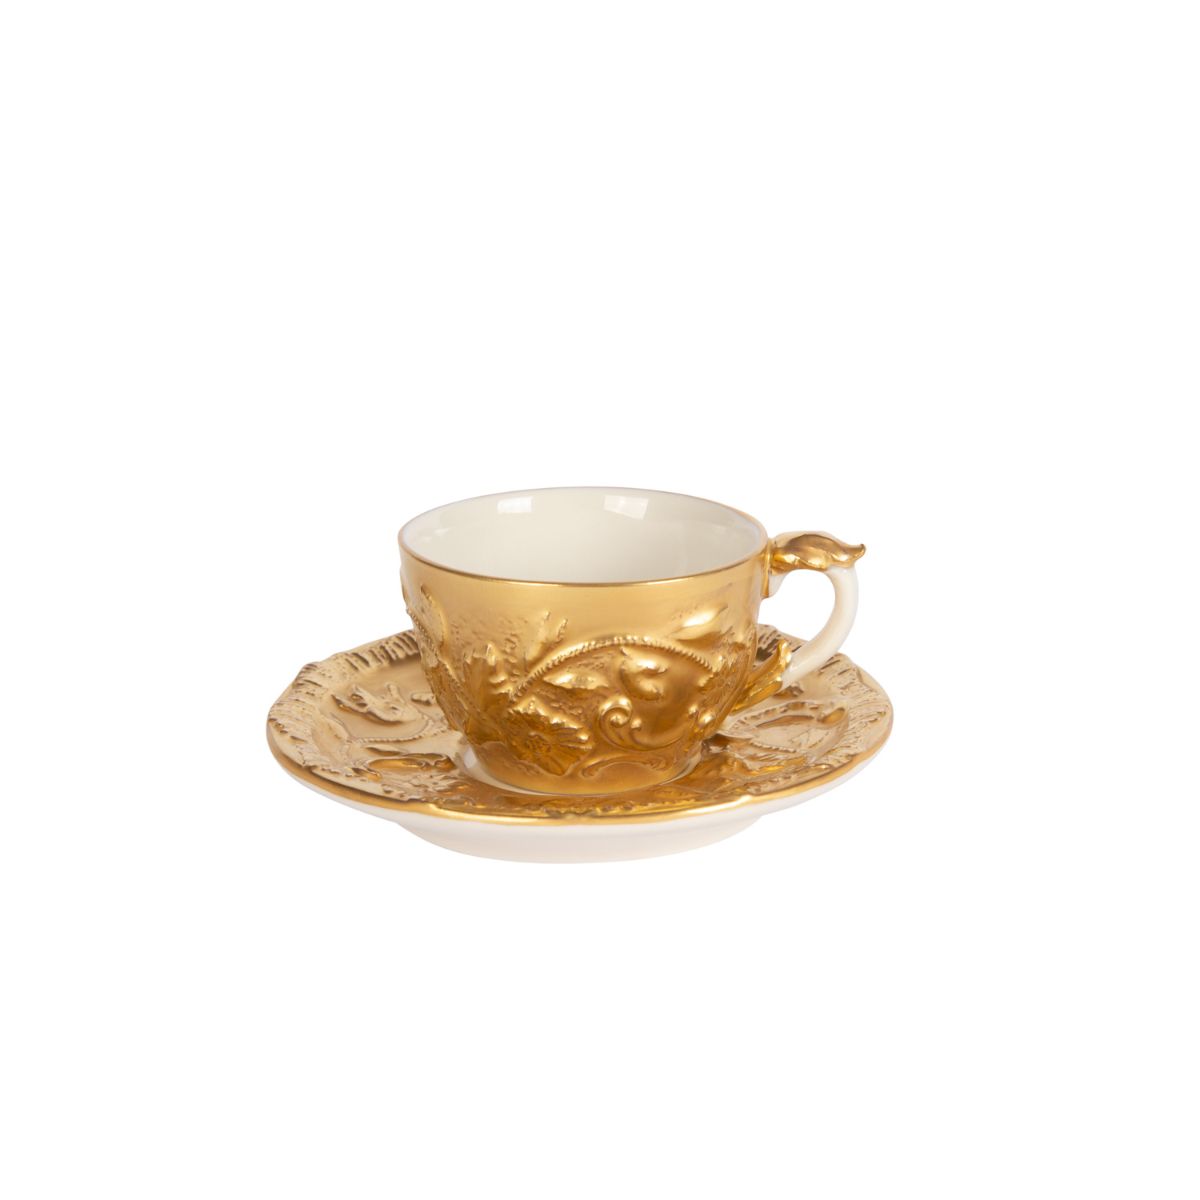 Taormina Gold Coffee Cup & Saucer